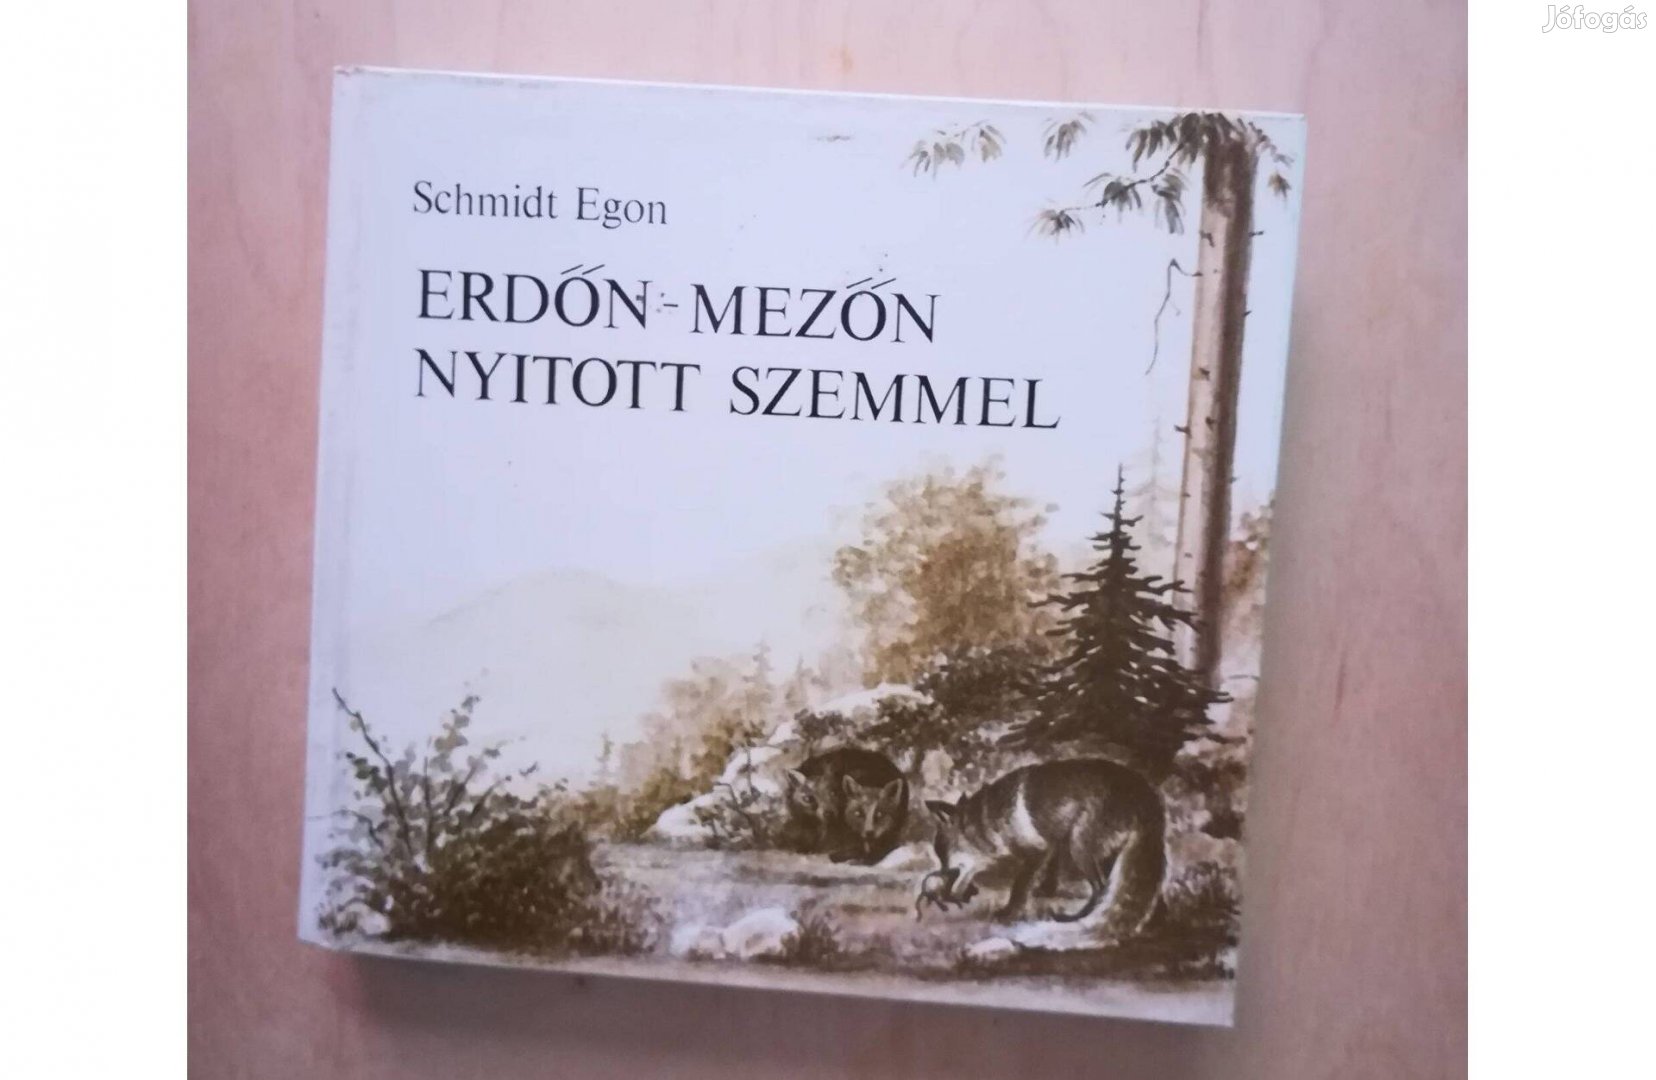 Schmidt Egon: Erdőn-mezőn nyitott szemmel